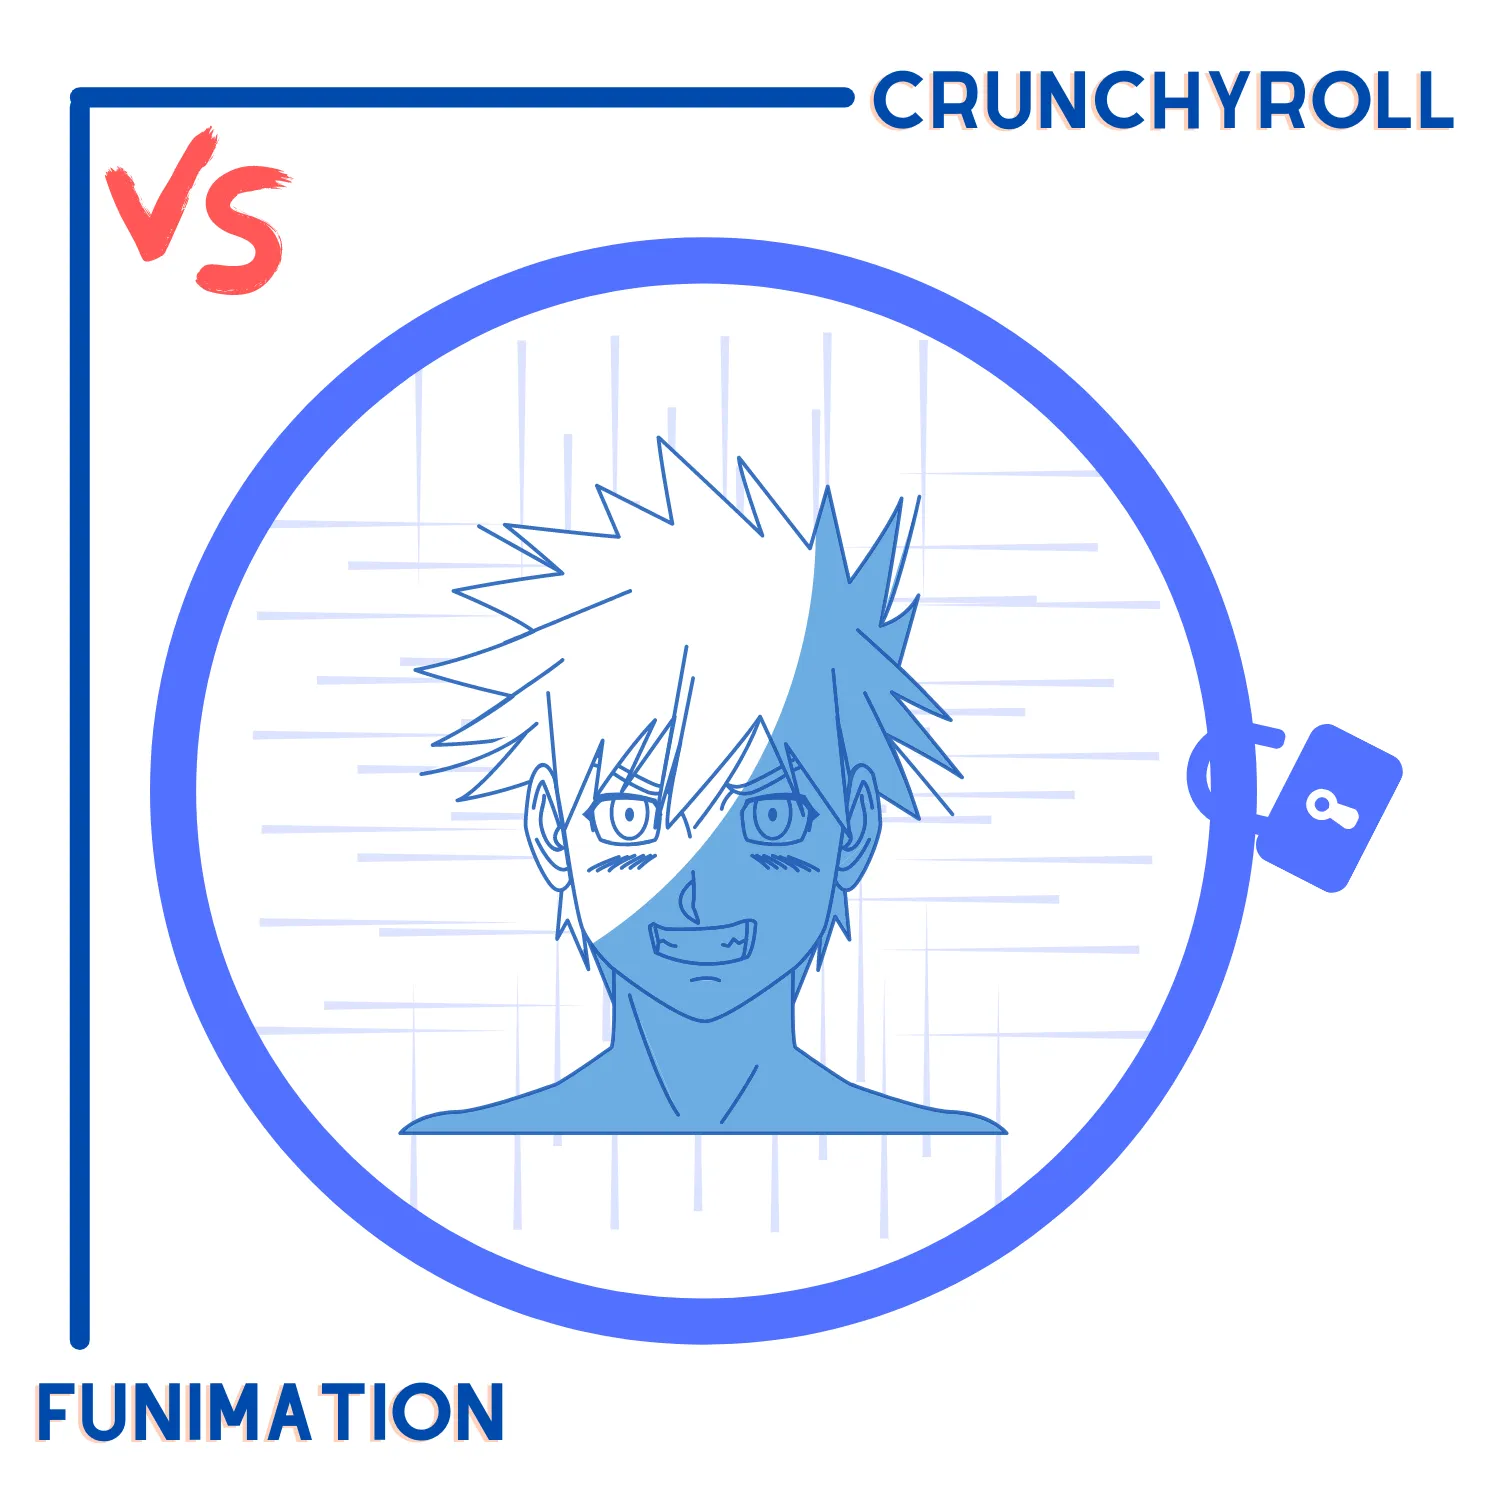 Crunchyroll vs. Funimation